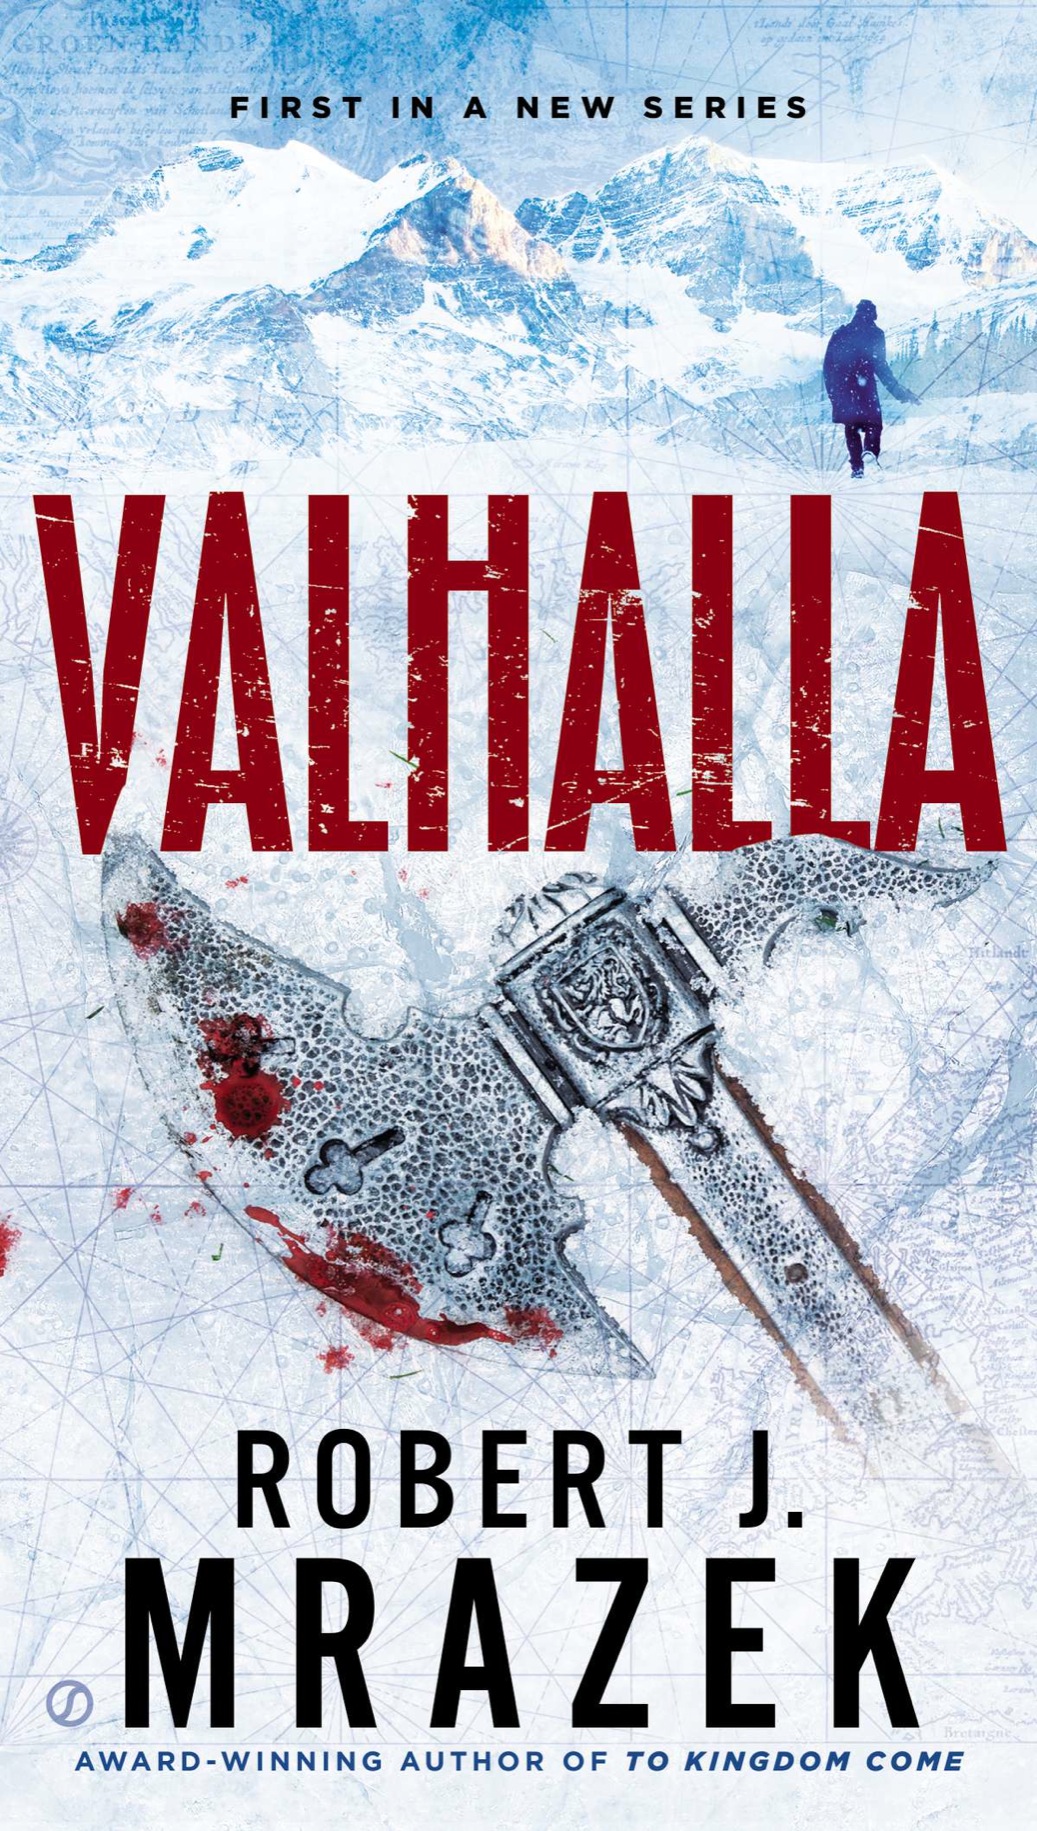 Valhalla (2014) by Robert J. Mrazek